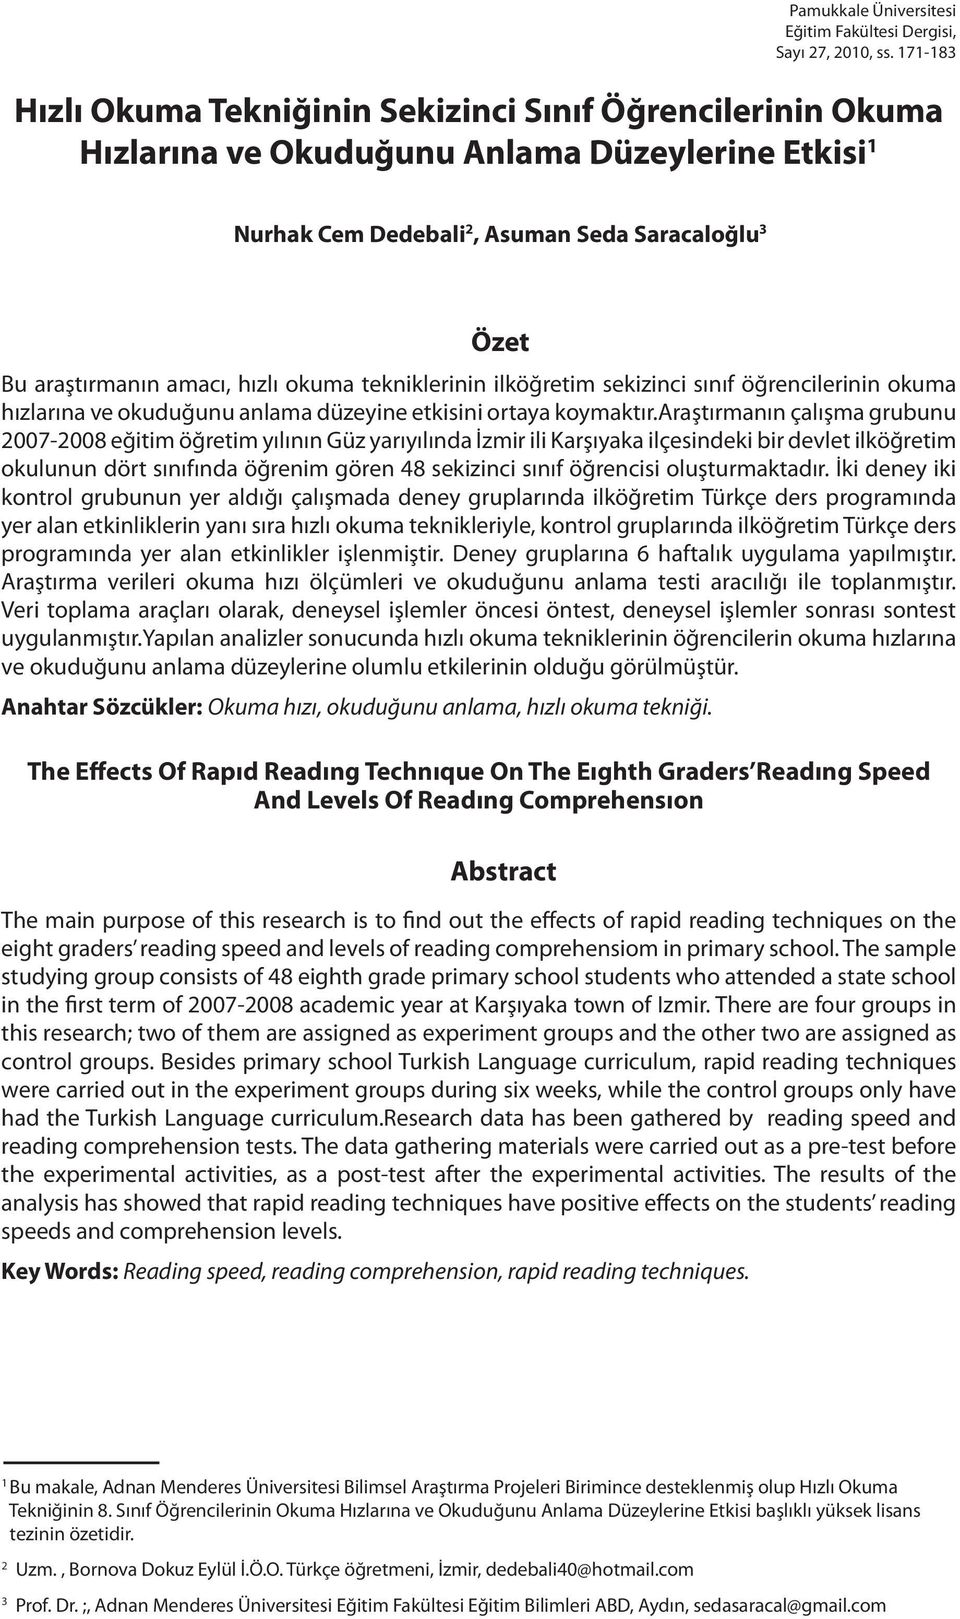 hızlı okuma tekniklerinin ilköğretim sekizinci sınıf öğrencilerinin okuma hızlarına ve okuduğunu anlama düzeyine etkisini ortaya koymaktır.